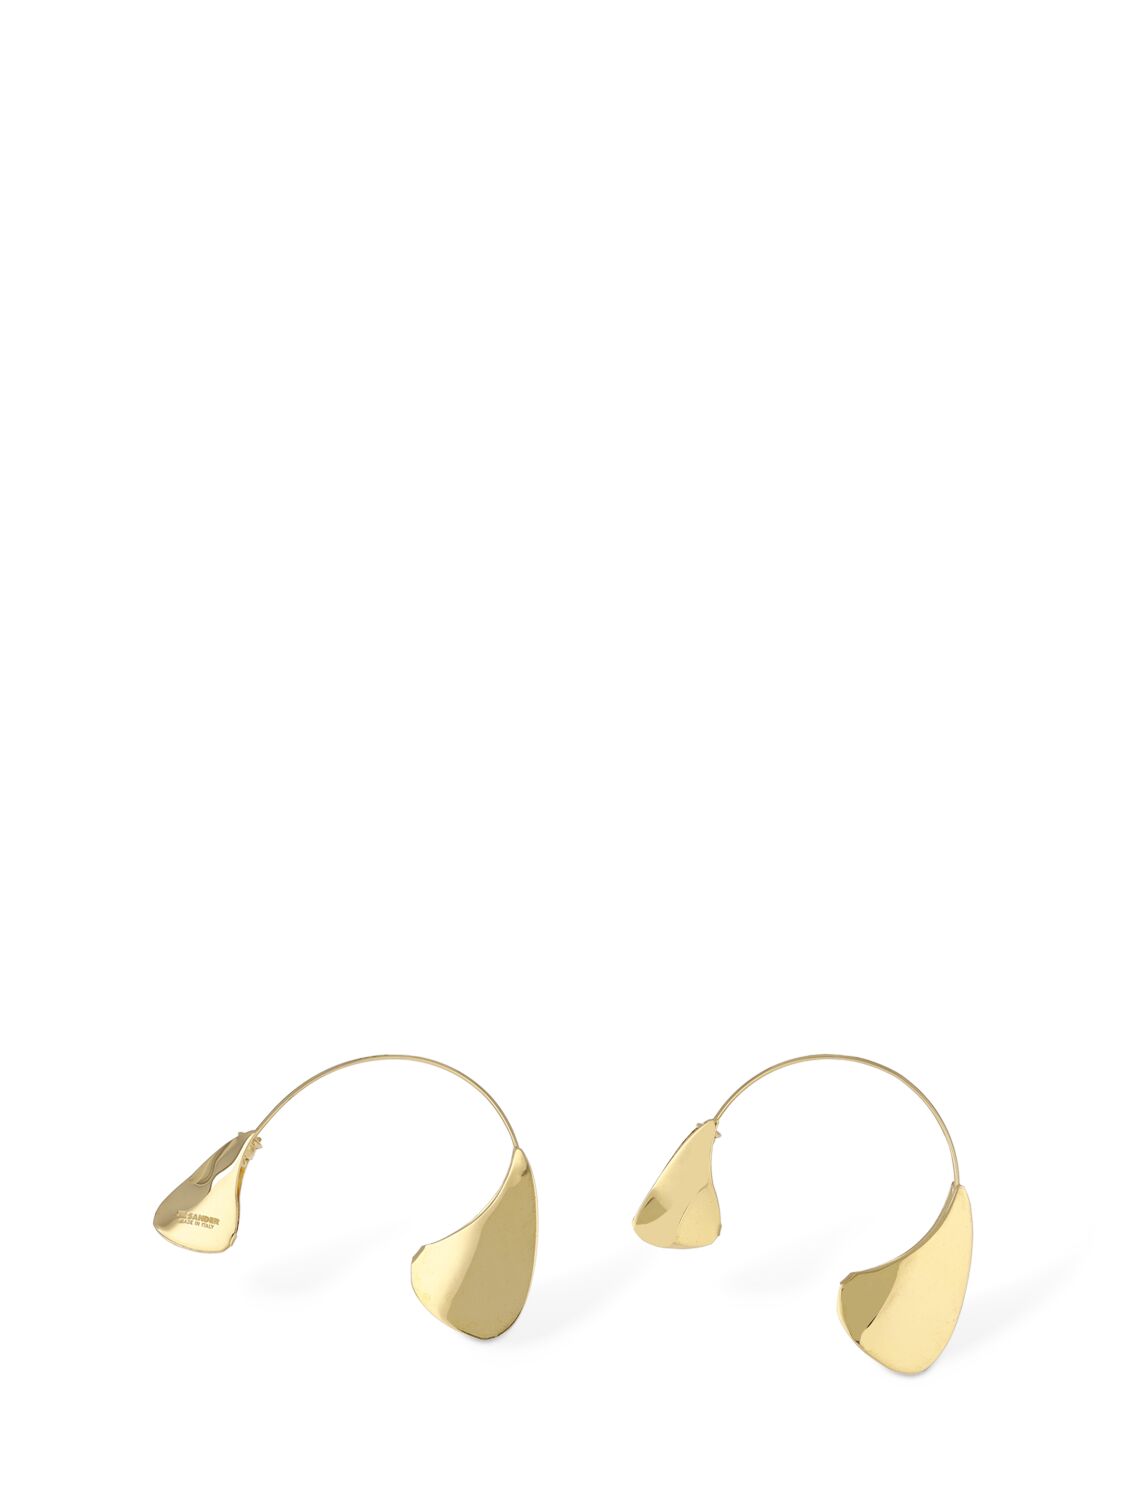 Jil Sander Bw8 3 Ear Cuff Earrings In Gold